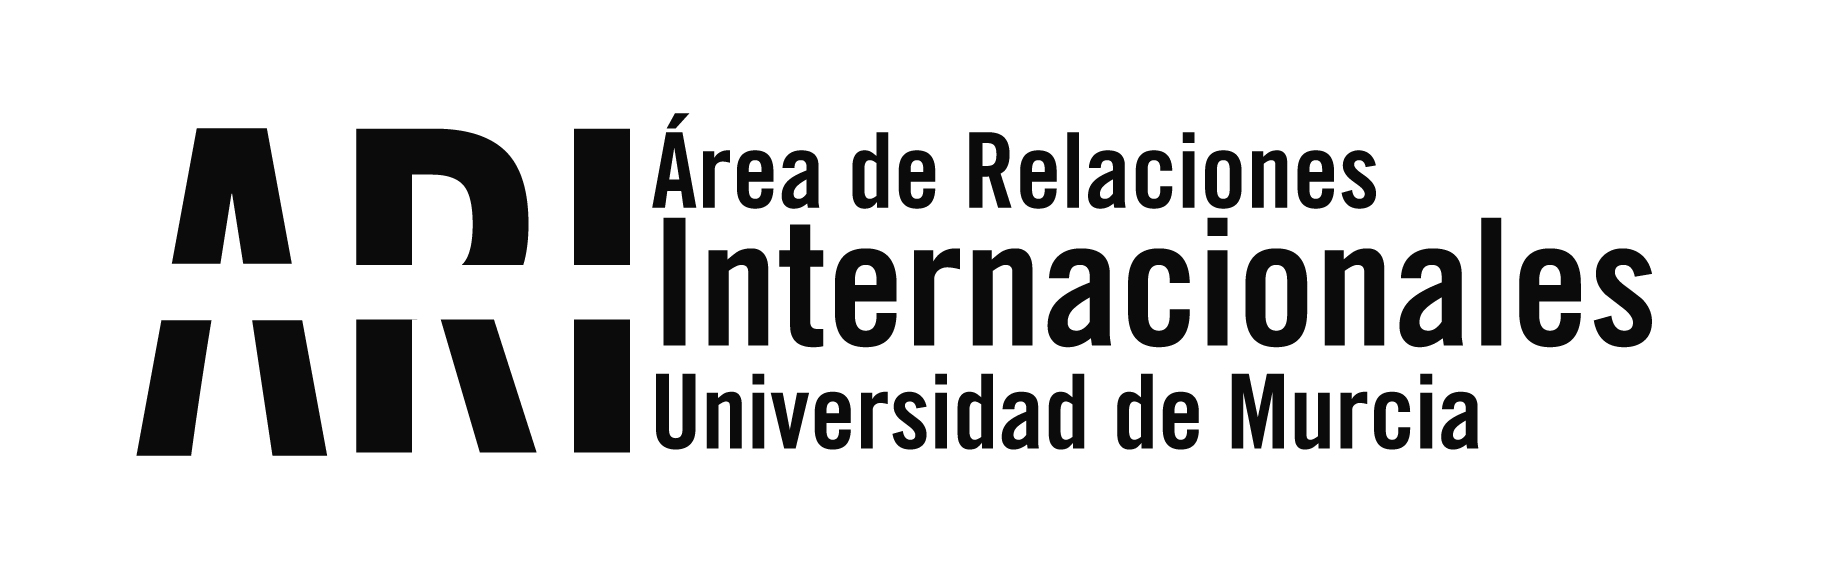 Reunión de coordinación del proyecto KA2 EXPERES en Murcia - Área de Relaciones Internacionales